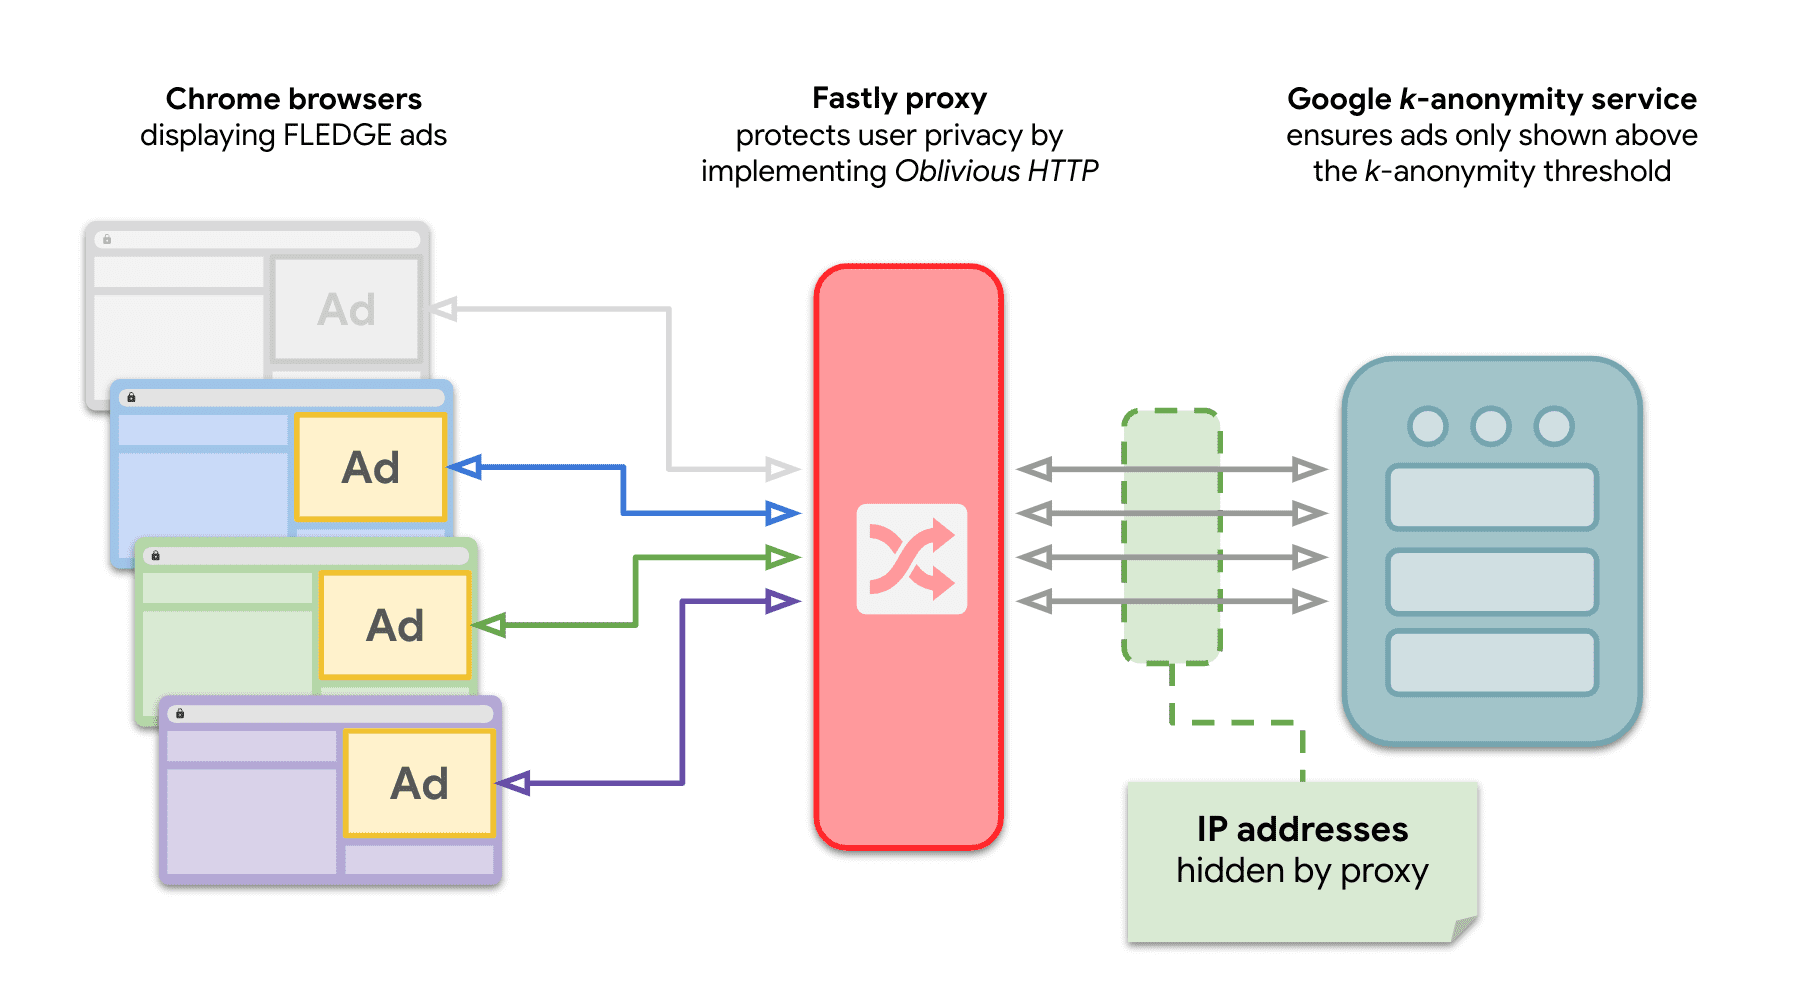 Ein Diagramm, das zeigt, dass mehrere Websites in Chrome Anfragen an den k-Anonymitätsserver senden, um FLEDGE-Anzeigen mit dem dazwischenliegenden OHTTP-Relay auszuliefern.